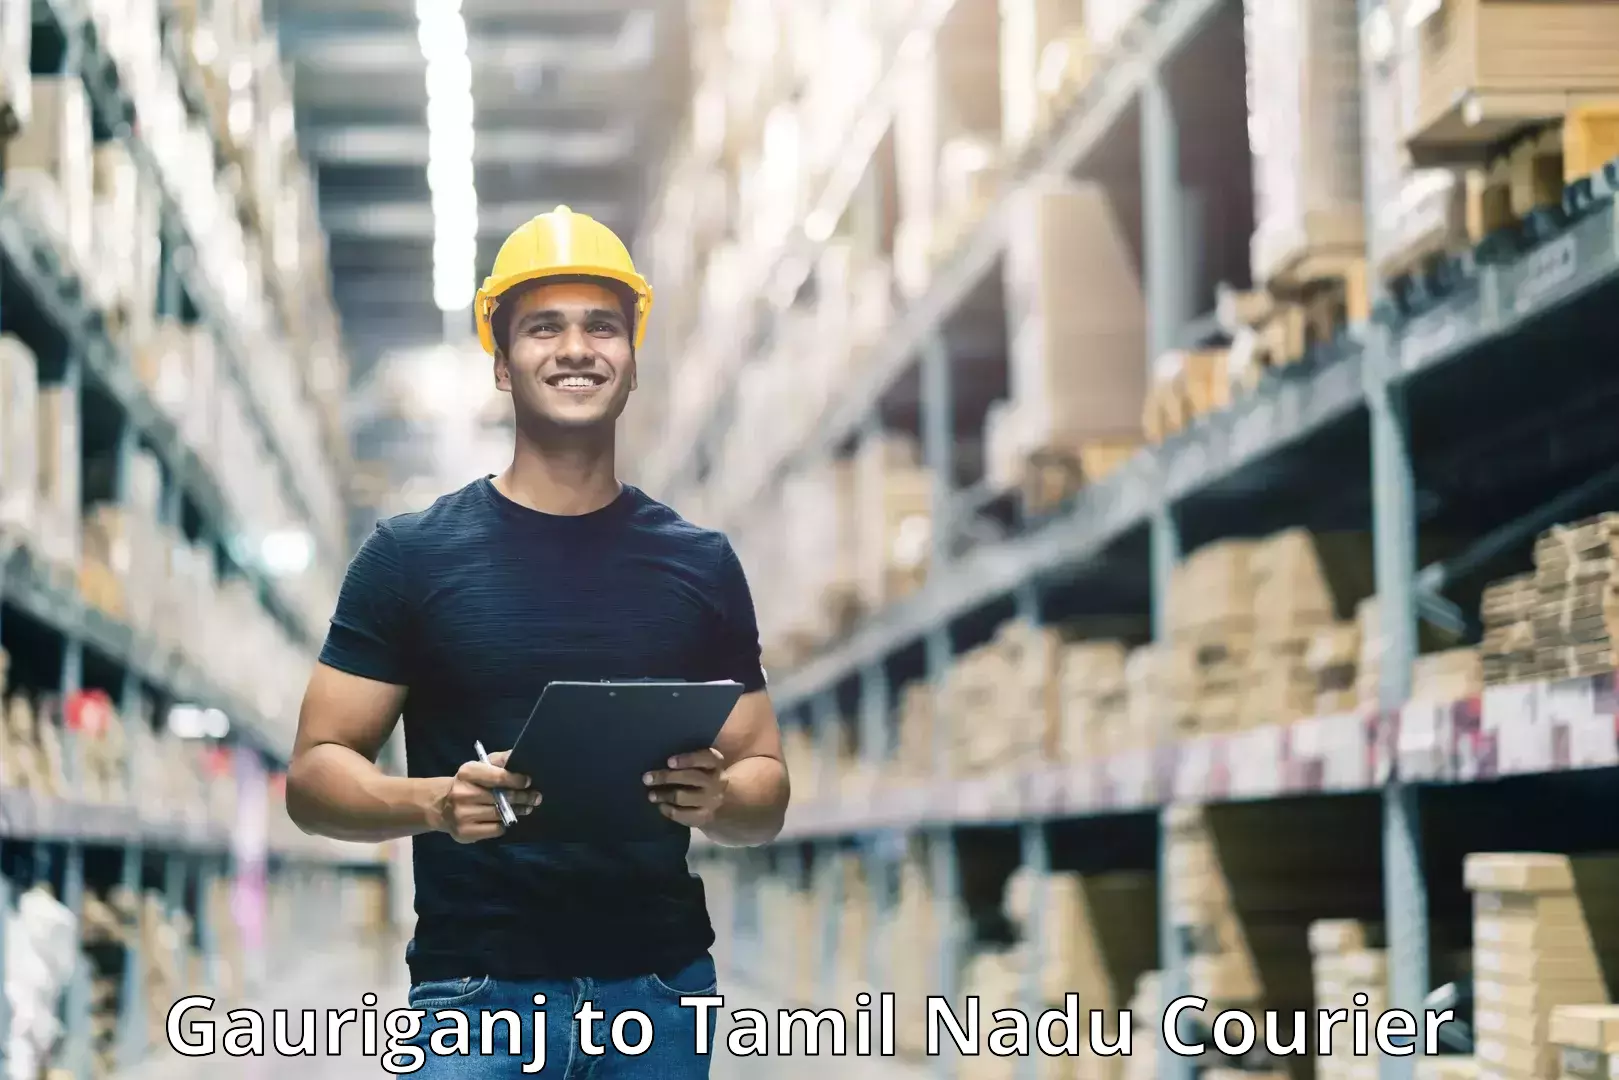 Cash on delivery service Gauriganj to Tamil Nadu